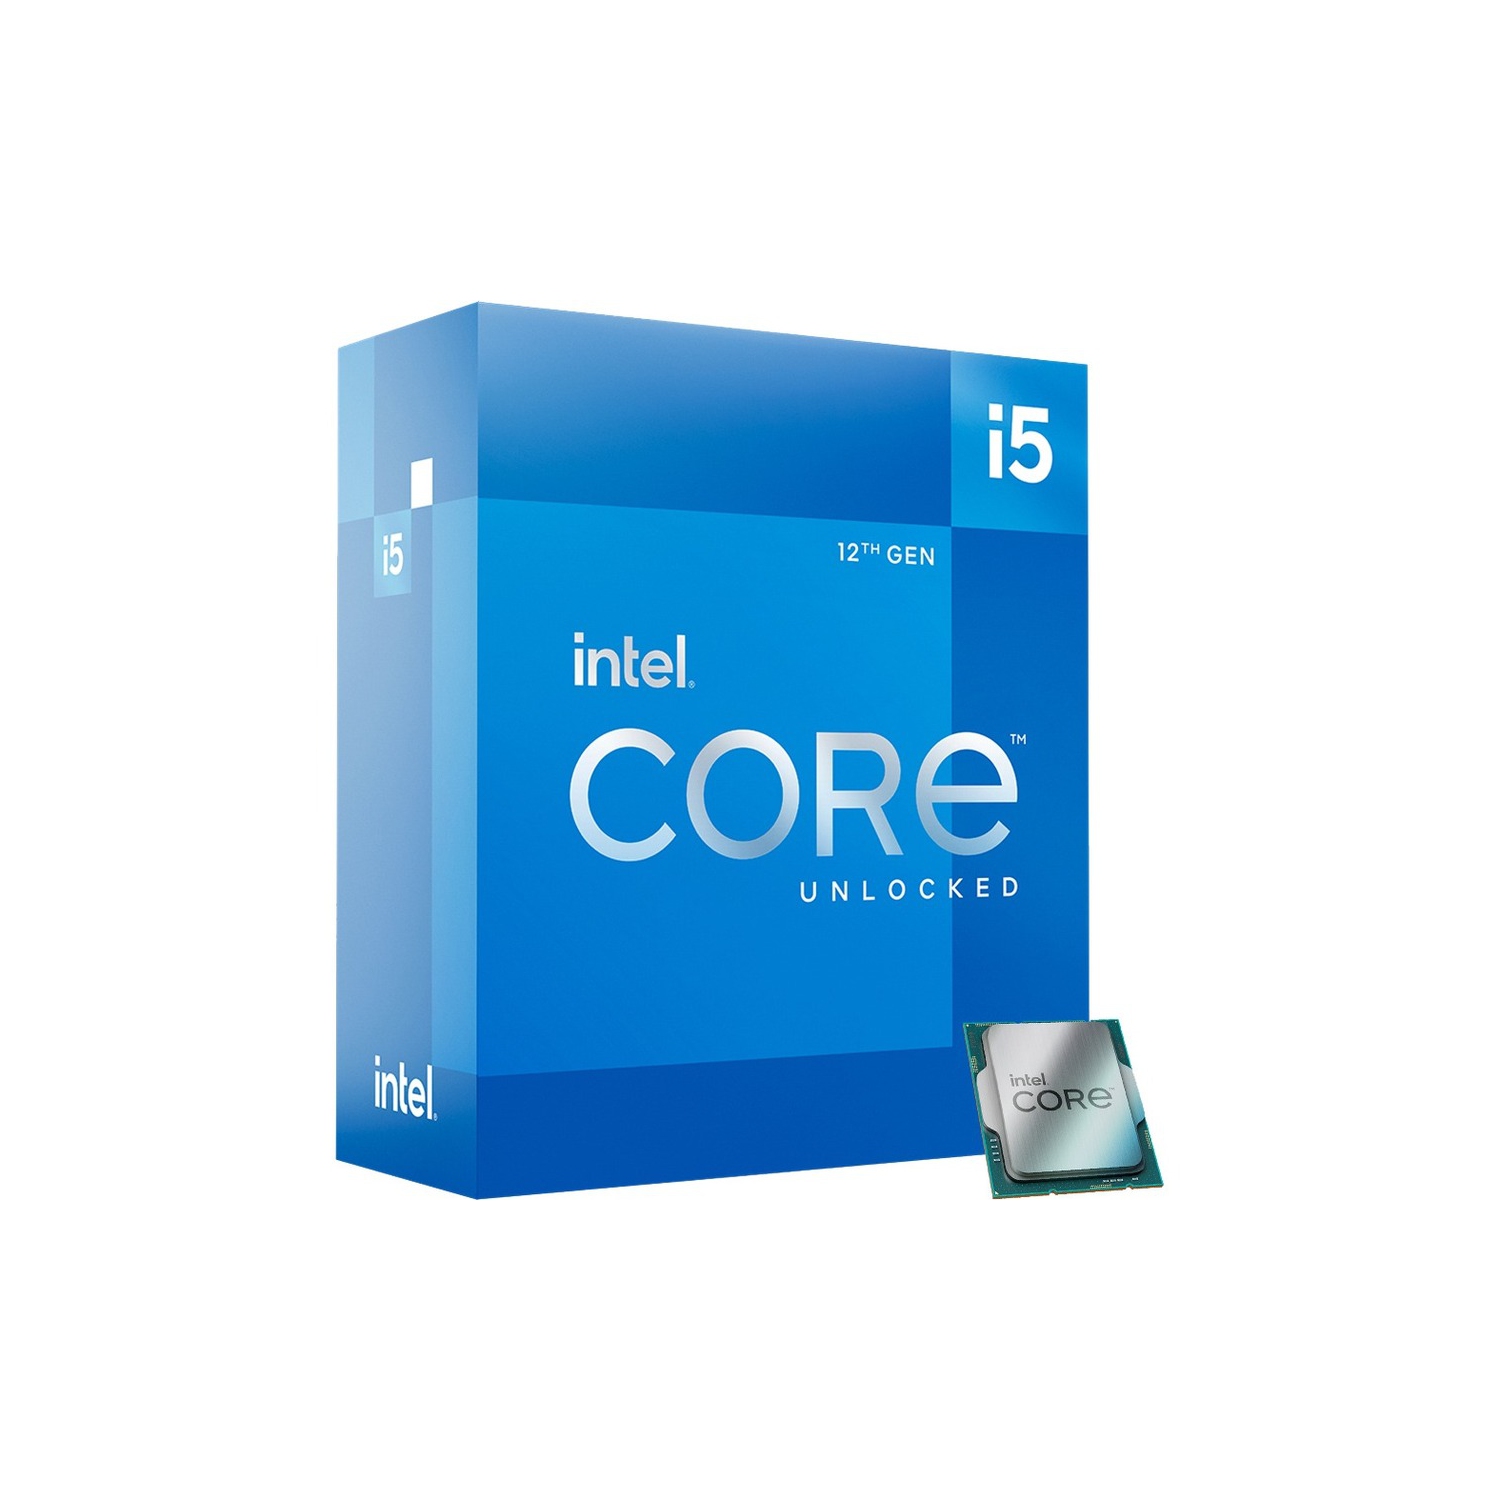 Intel Core i5 Deca-core i5-12600K 3.70GHz Desktop Processor